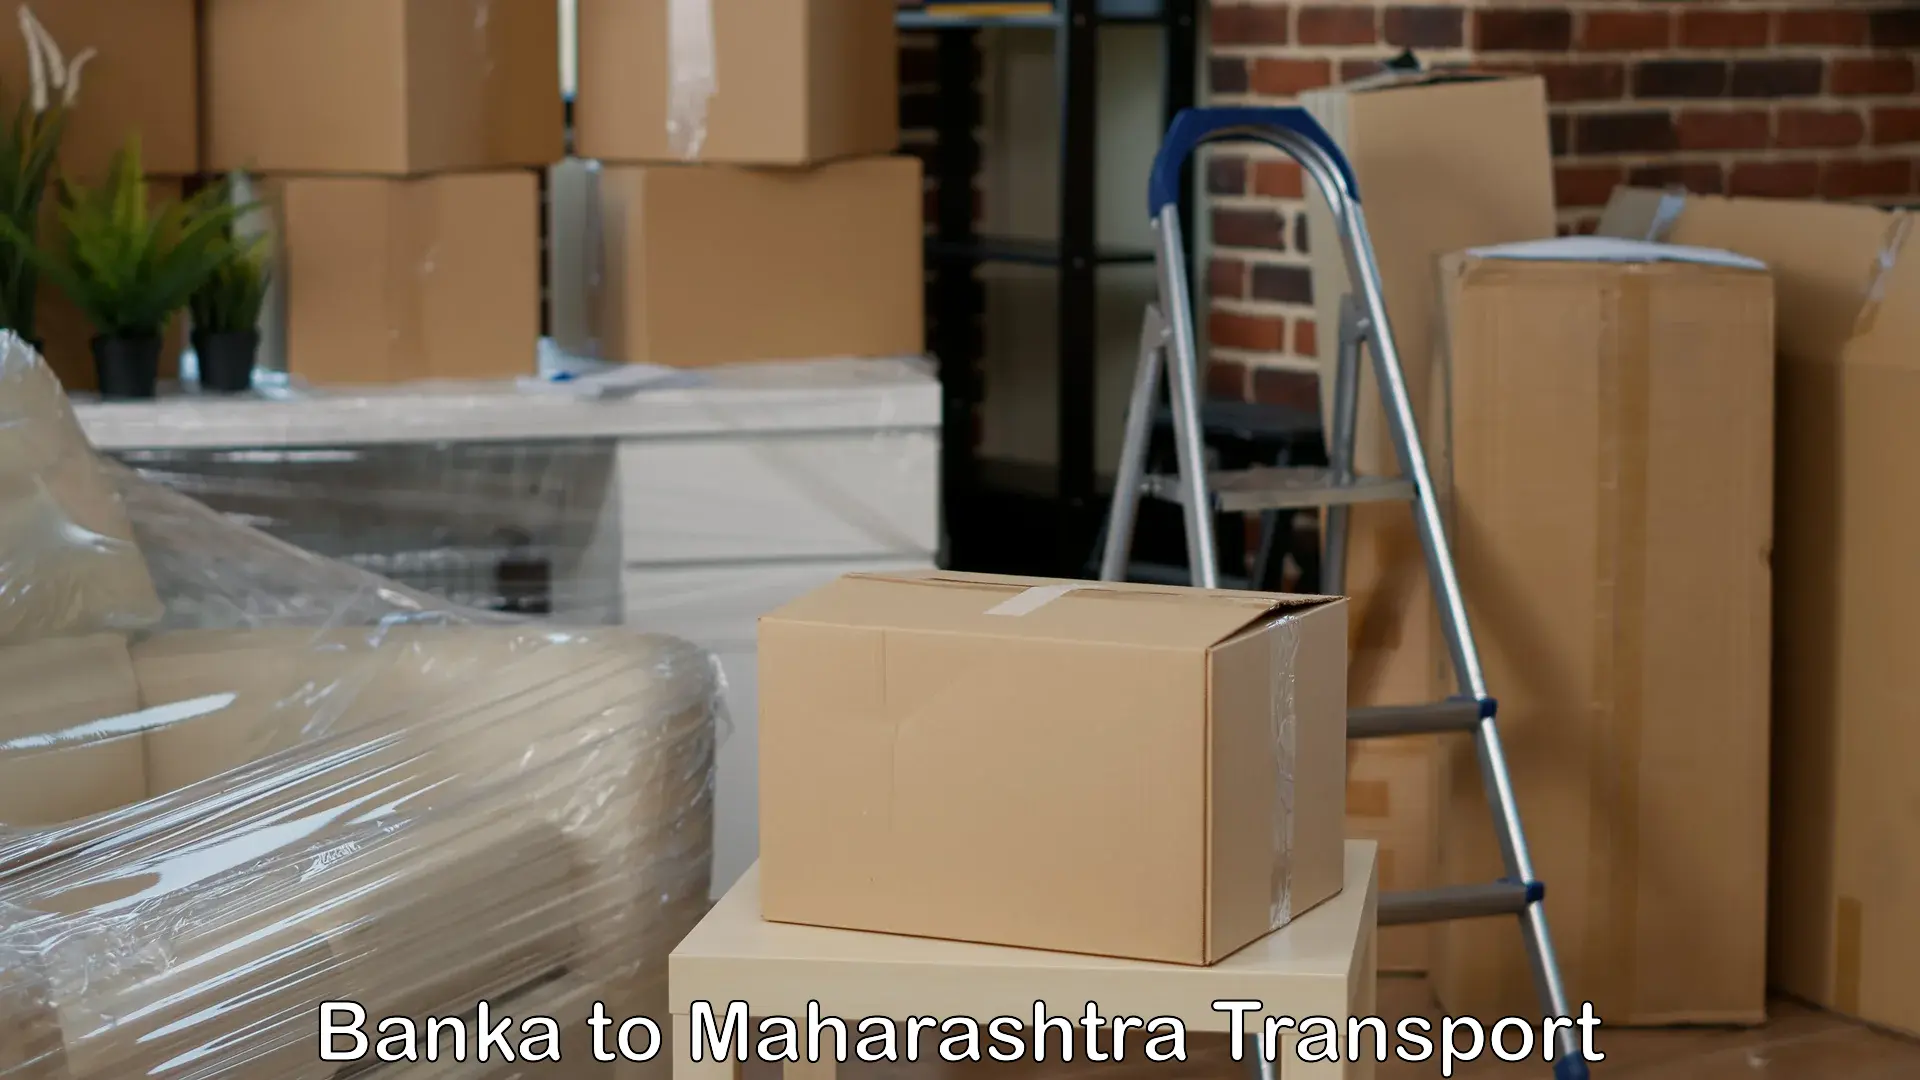 Intercity transport Banka to Maharashtra